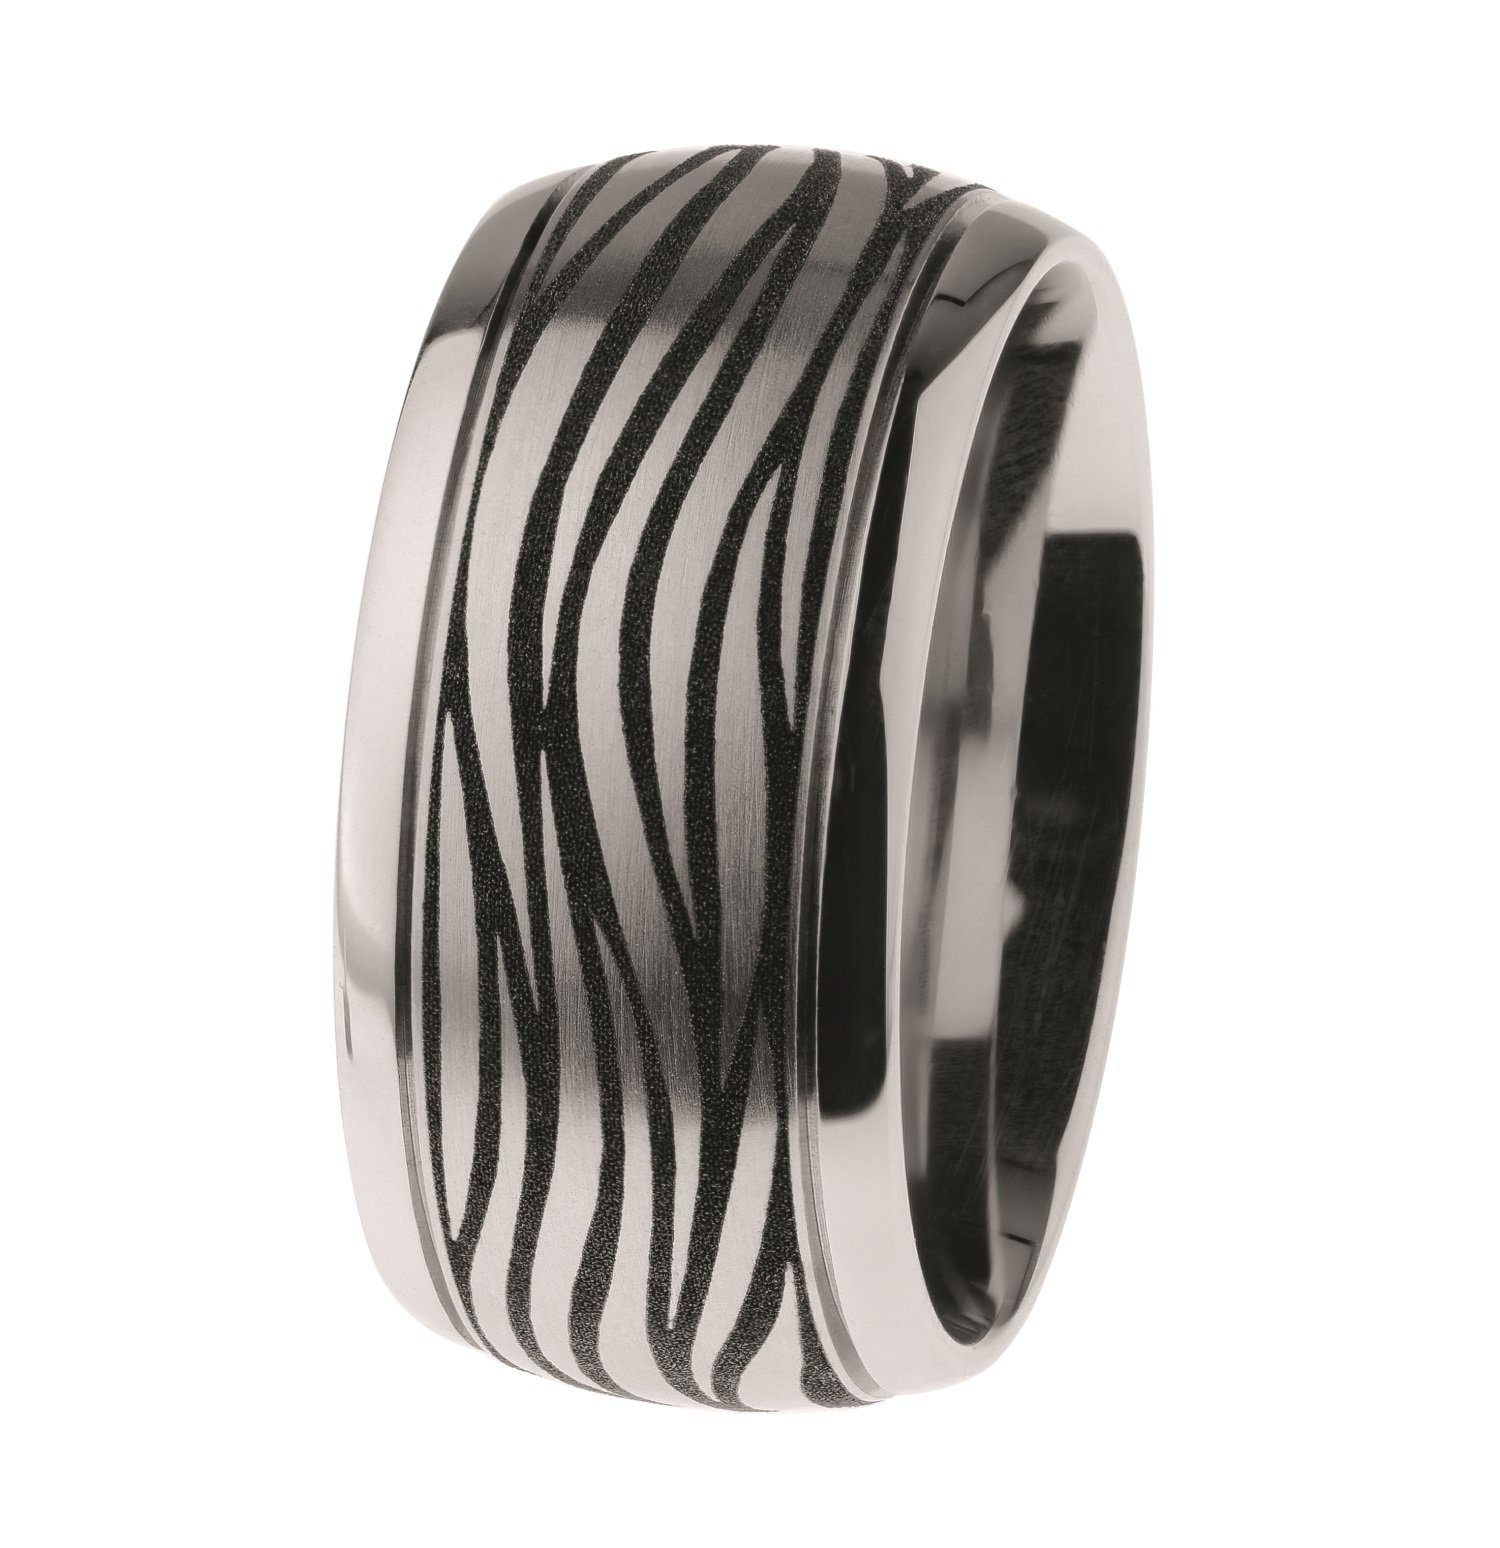 Ernstes Design Fingerring Ring Edelstahl graviert R500